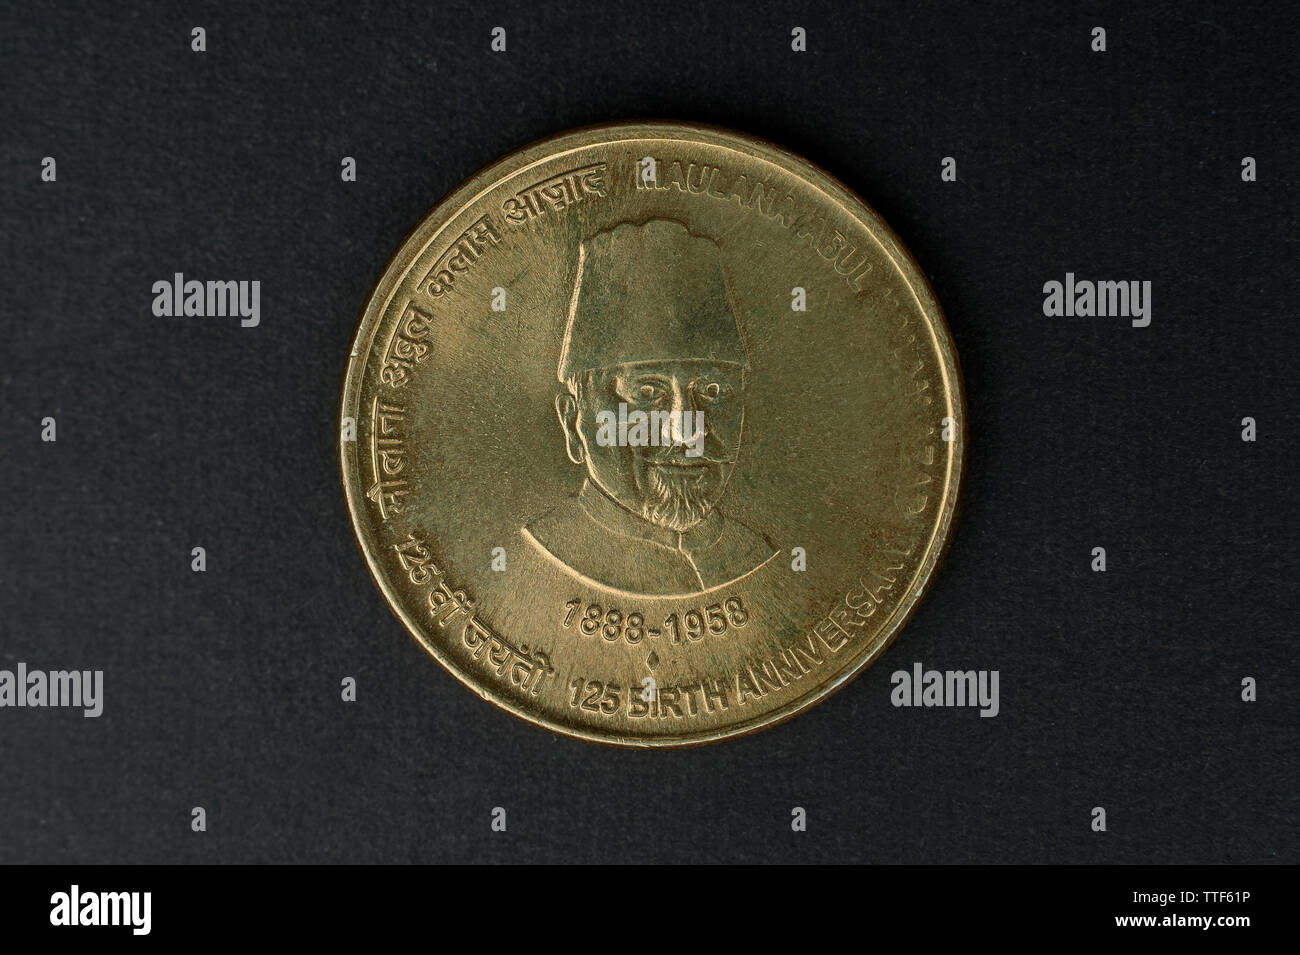 04 Oct 2015  Maulana Abdul Kalam Azad 125 Birth Century 5 Rupee Coin Kalyan near Mumbai Maharashtra INDIA Stock Photo